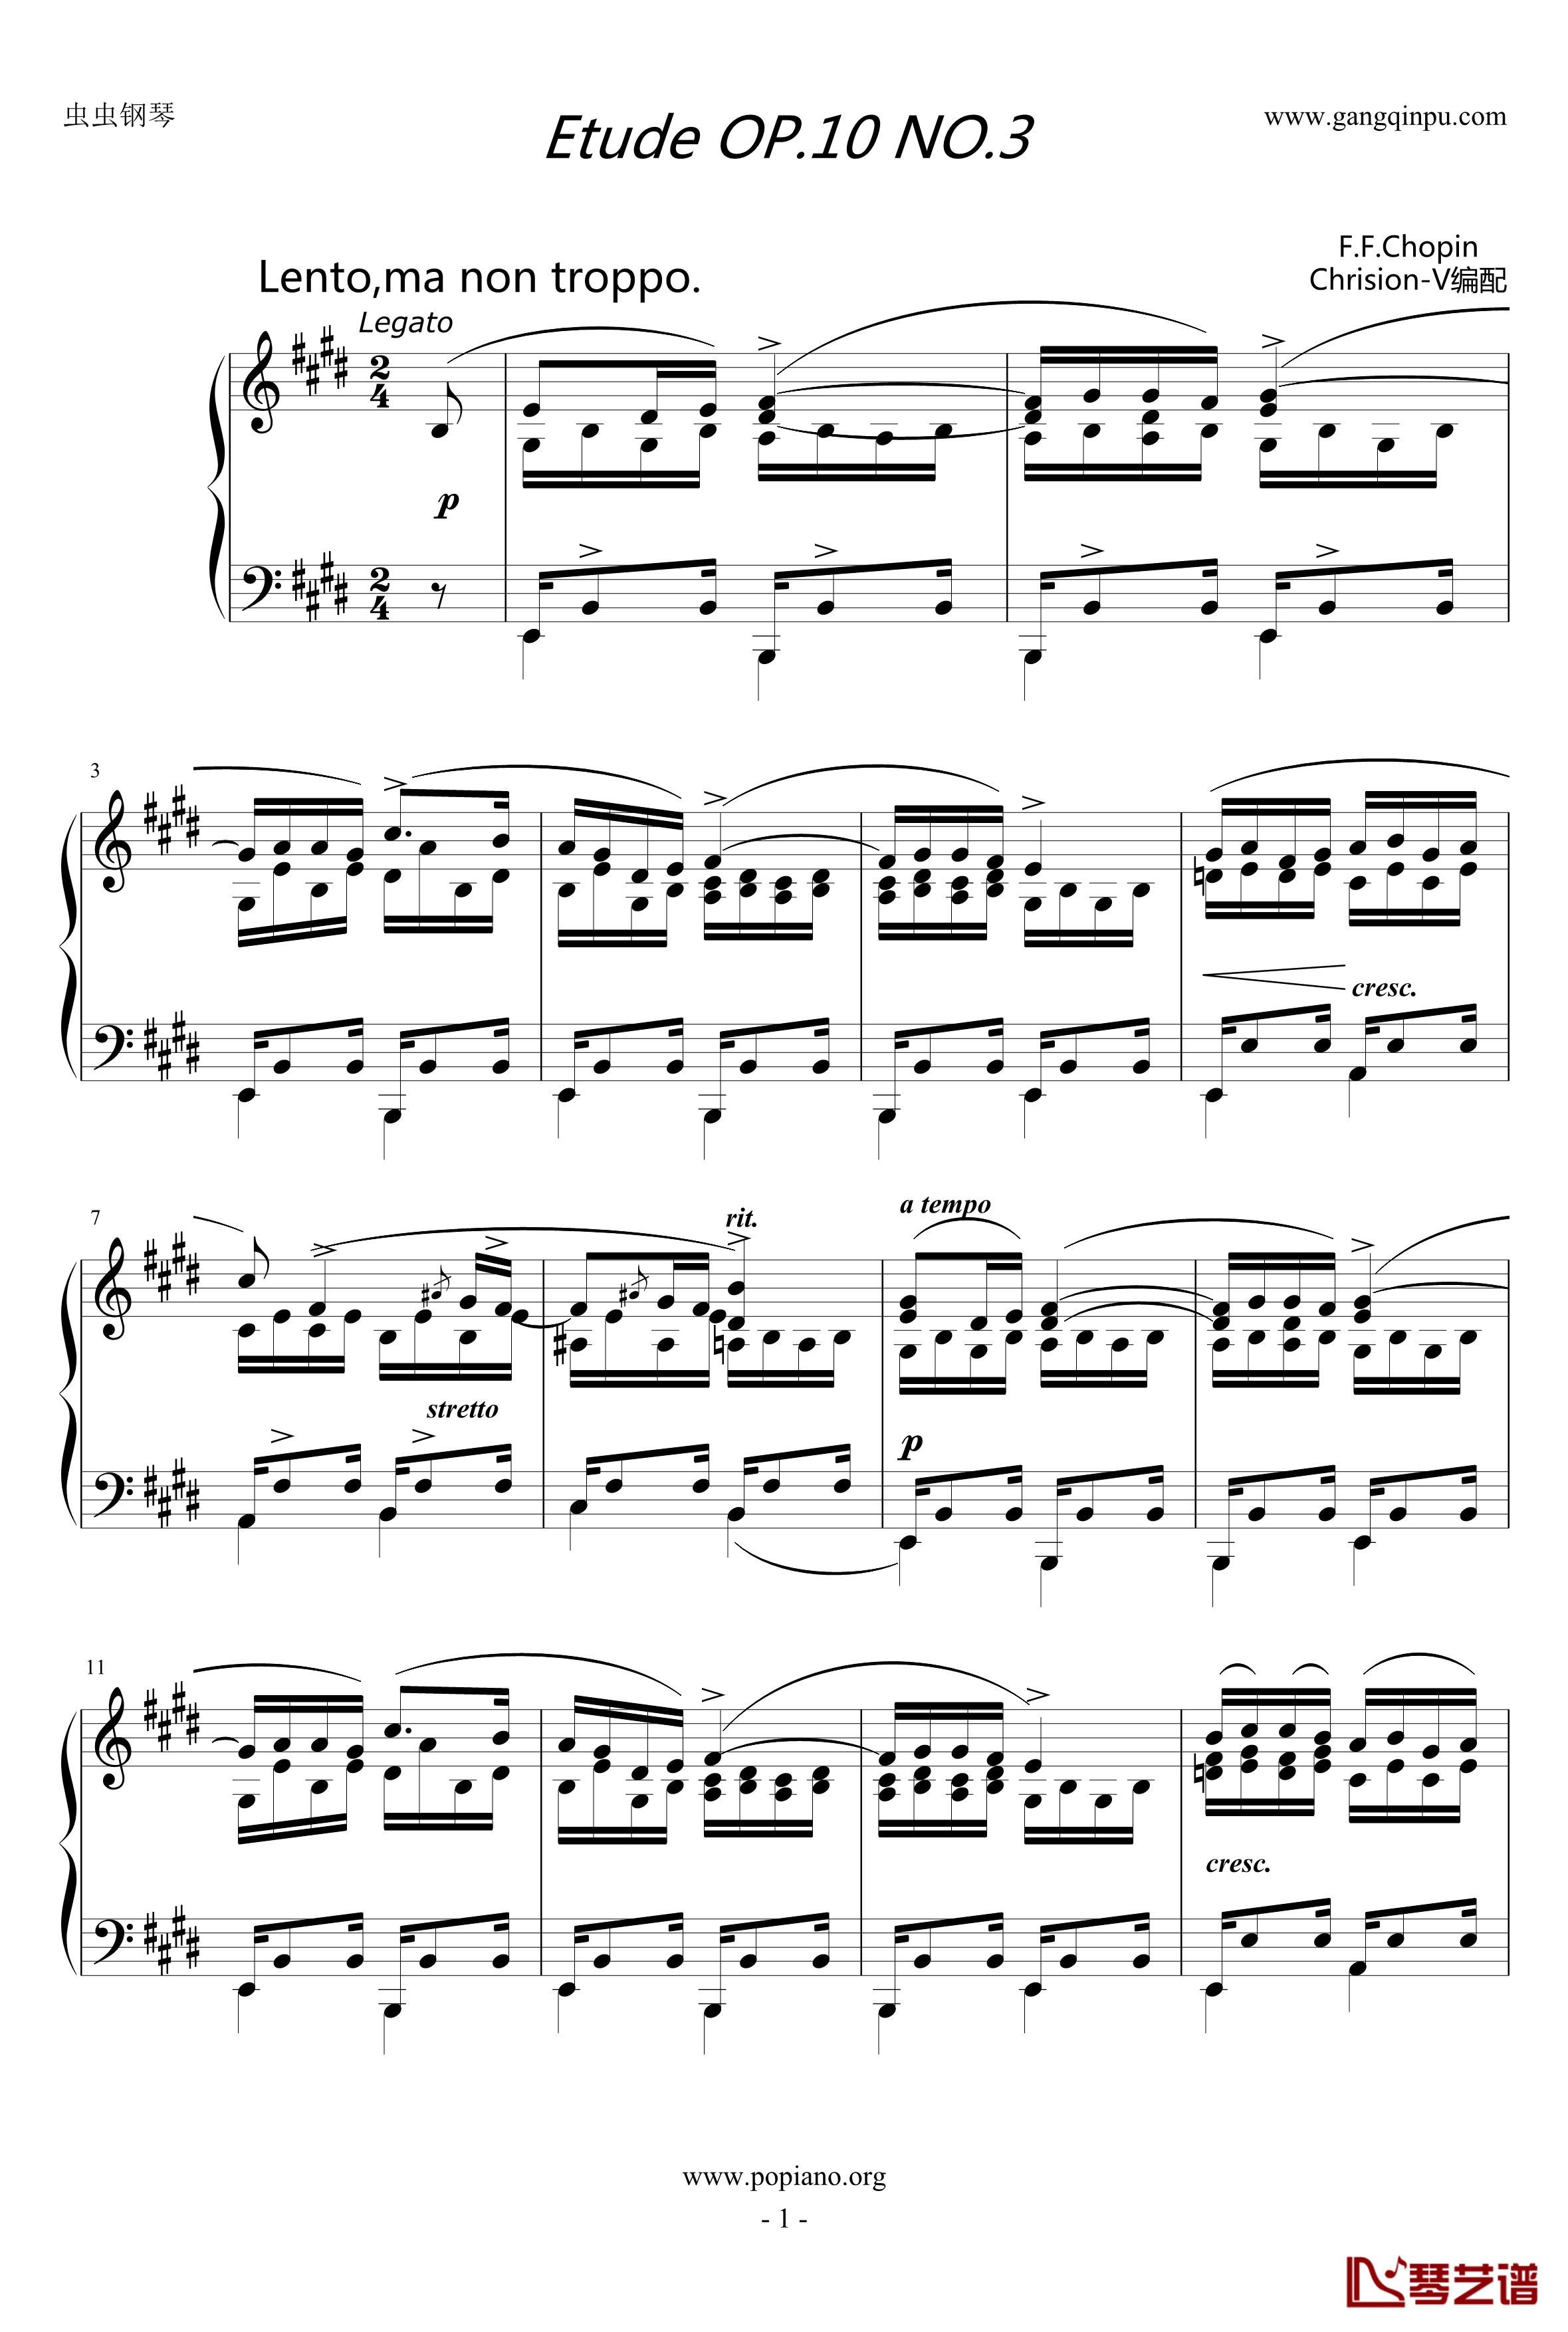 肖邦练习曲钢琴谱-Etude OP.10 NO.3-肖邦-chopin1